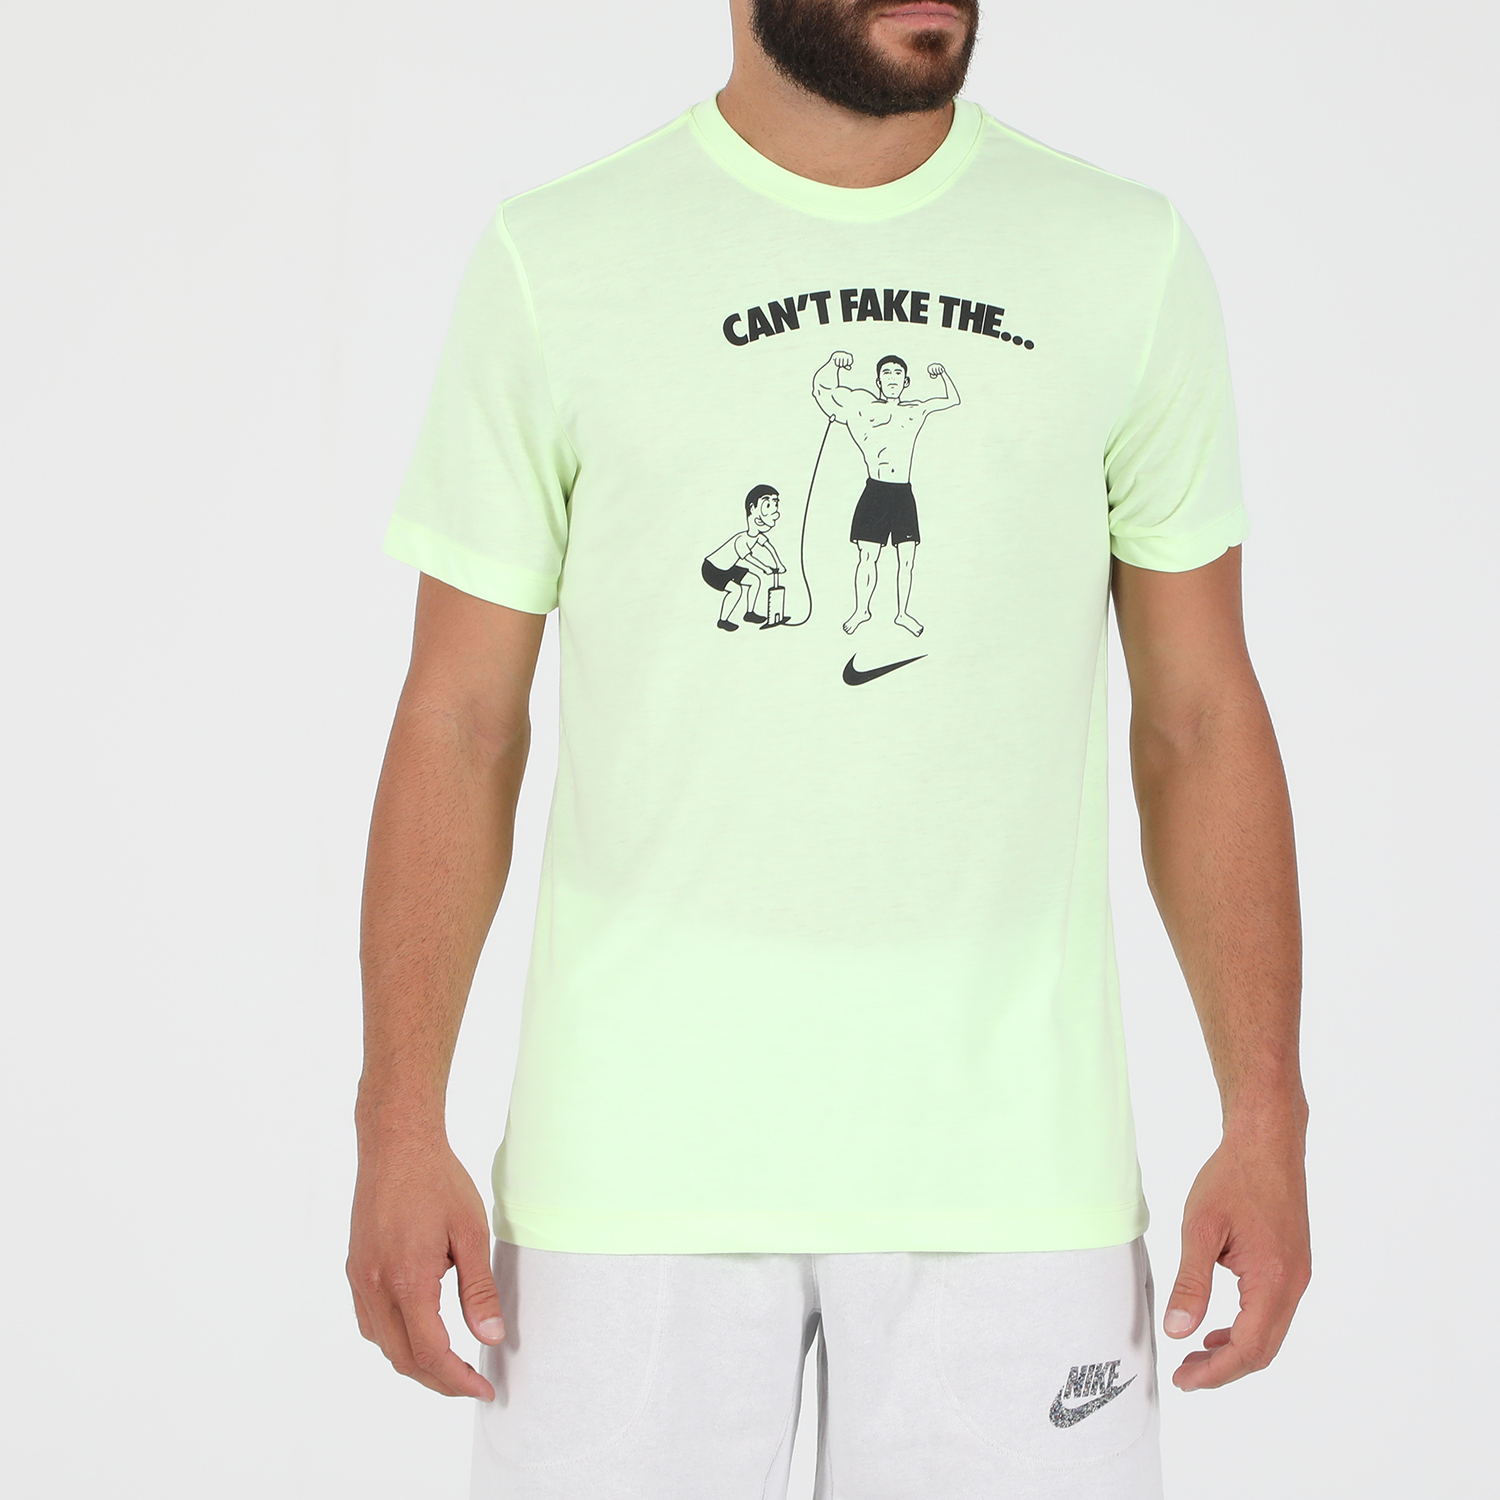 Ανδρικά/Ρούχα/Αθλητικά/T-shirt NIKE - Ανδρικό t-shirt NIKE DB TEE CANT FAKE IT κίτρινο